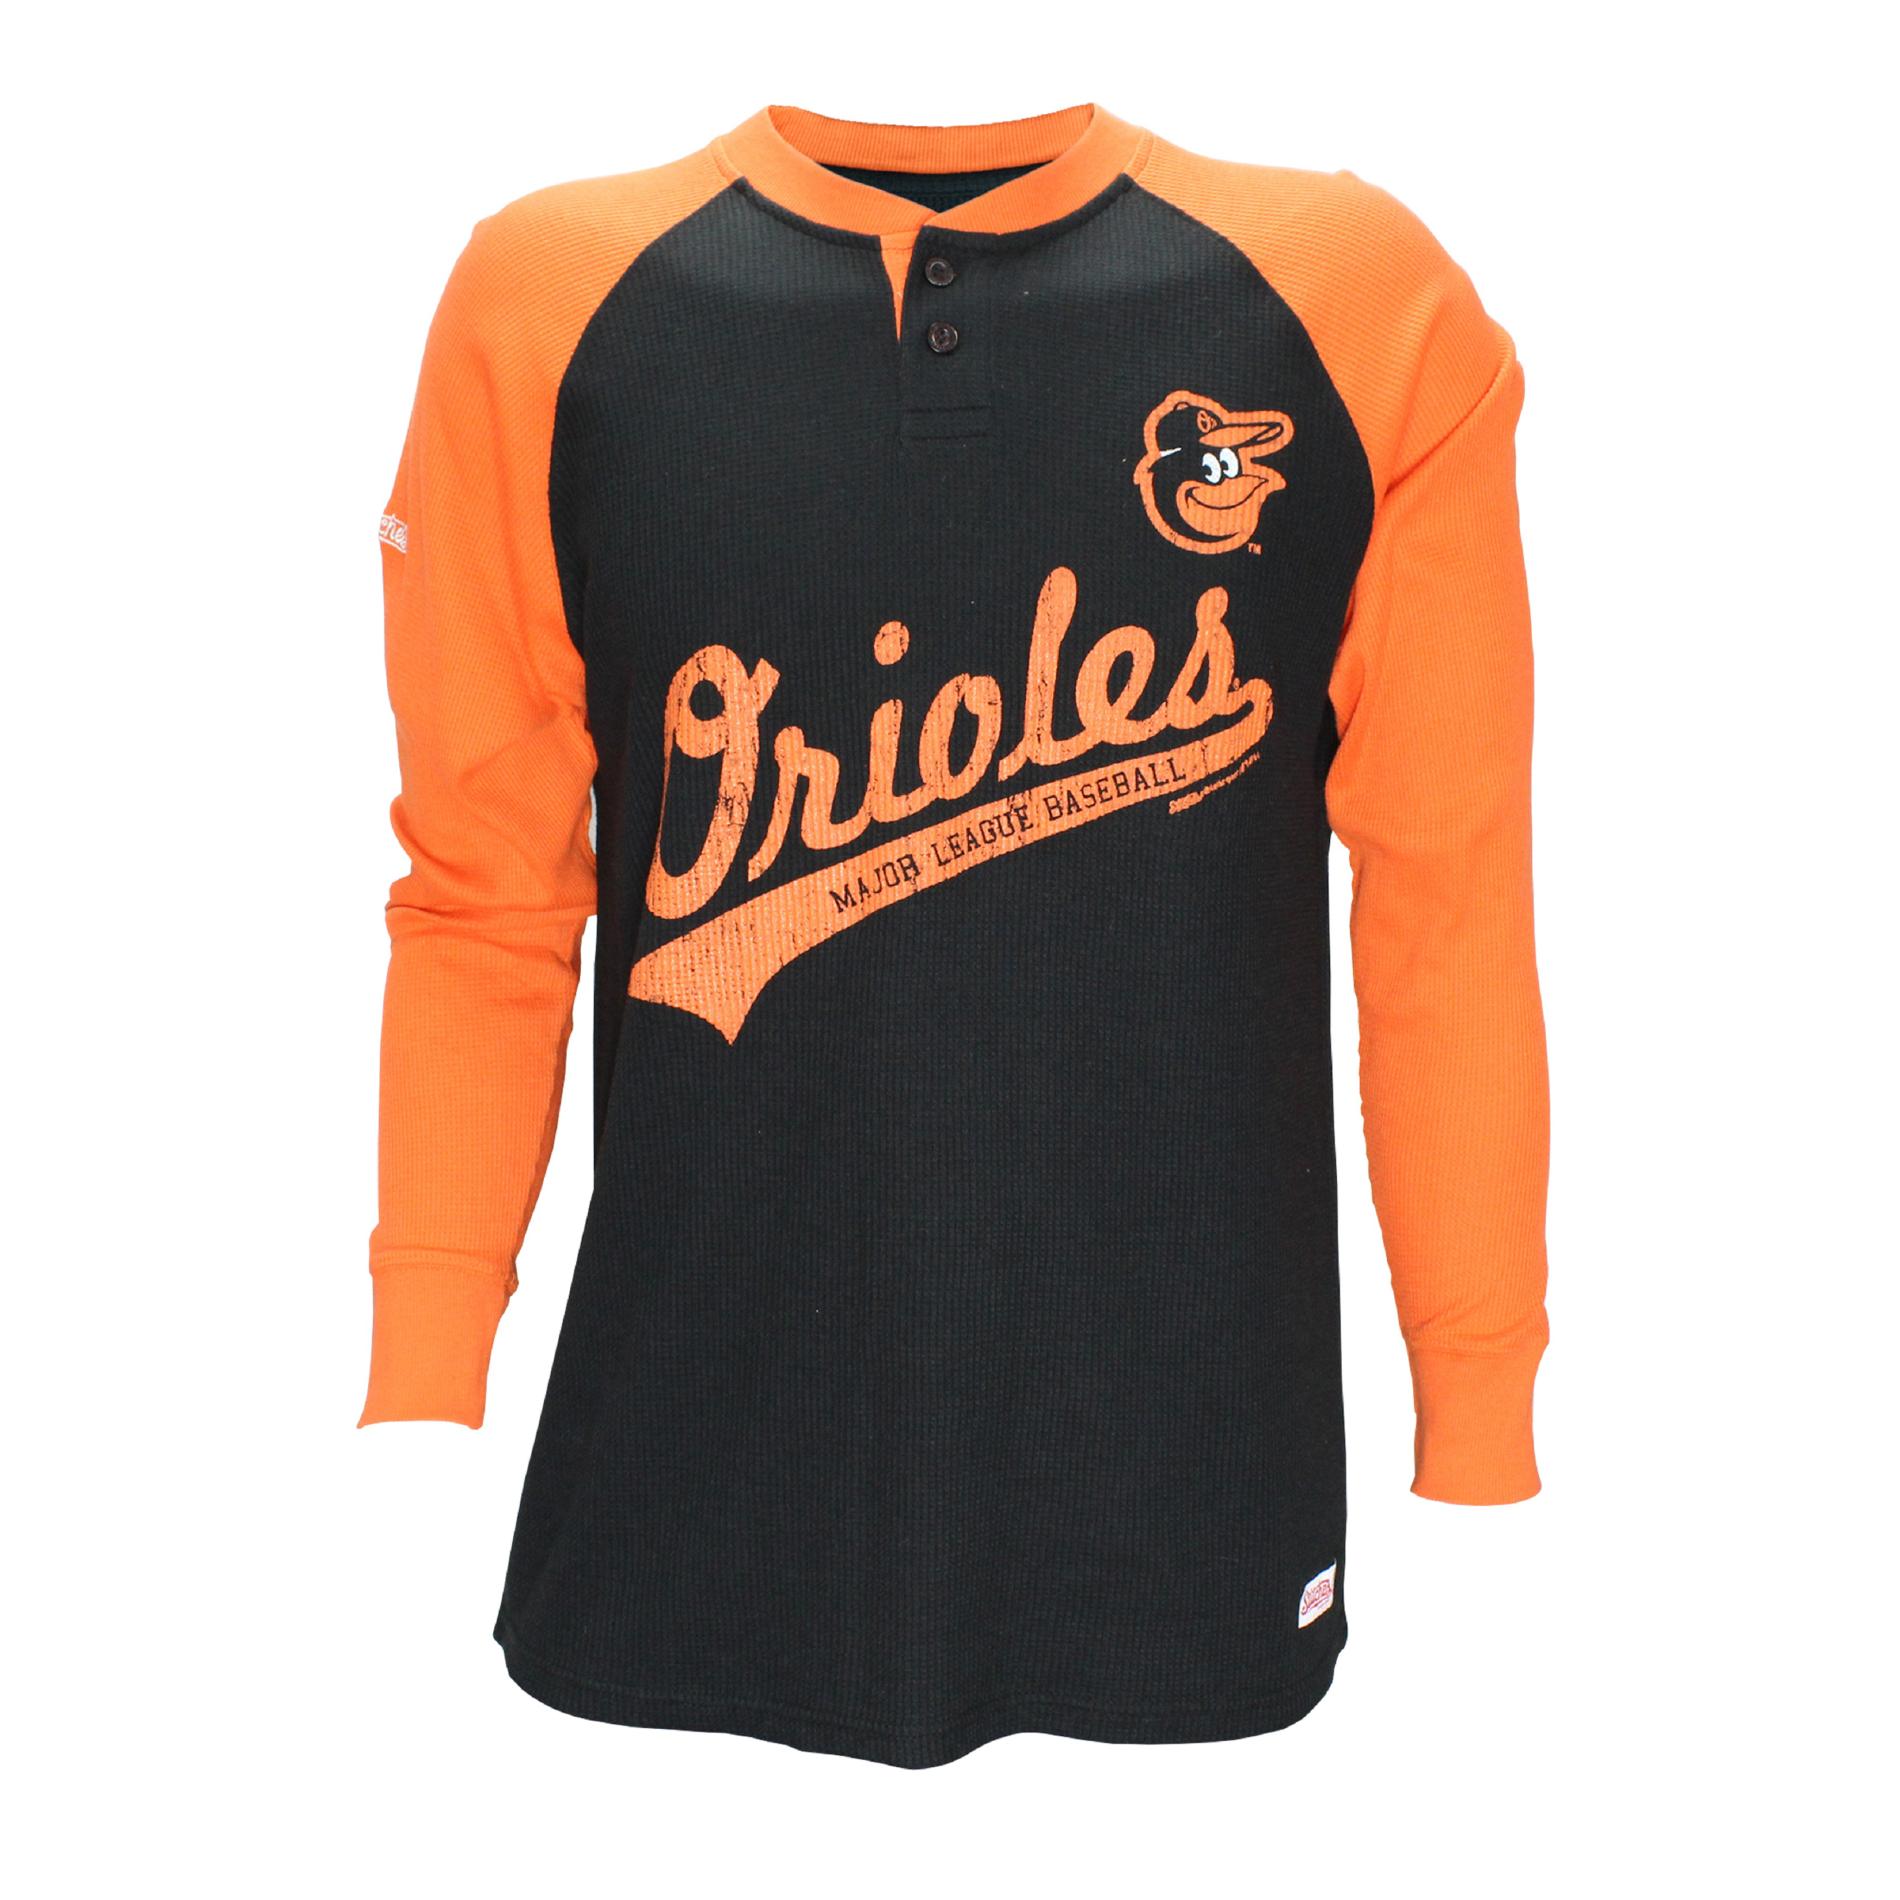 MLB Men's Henley Baseball Shirt - Baltimore Orioles